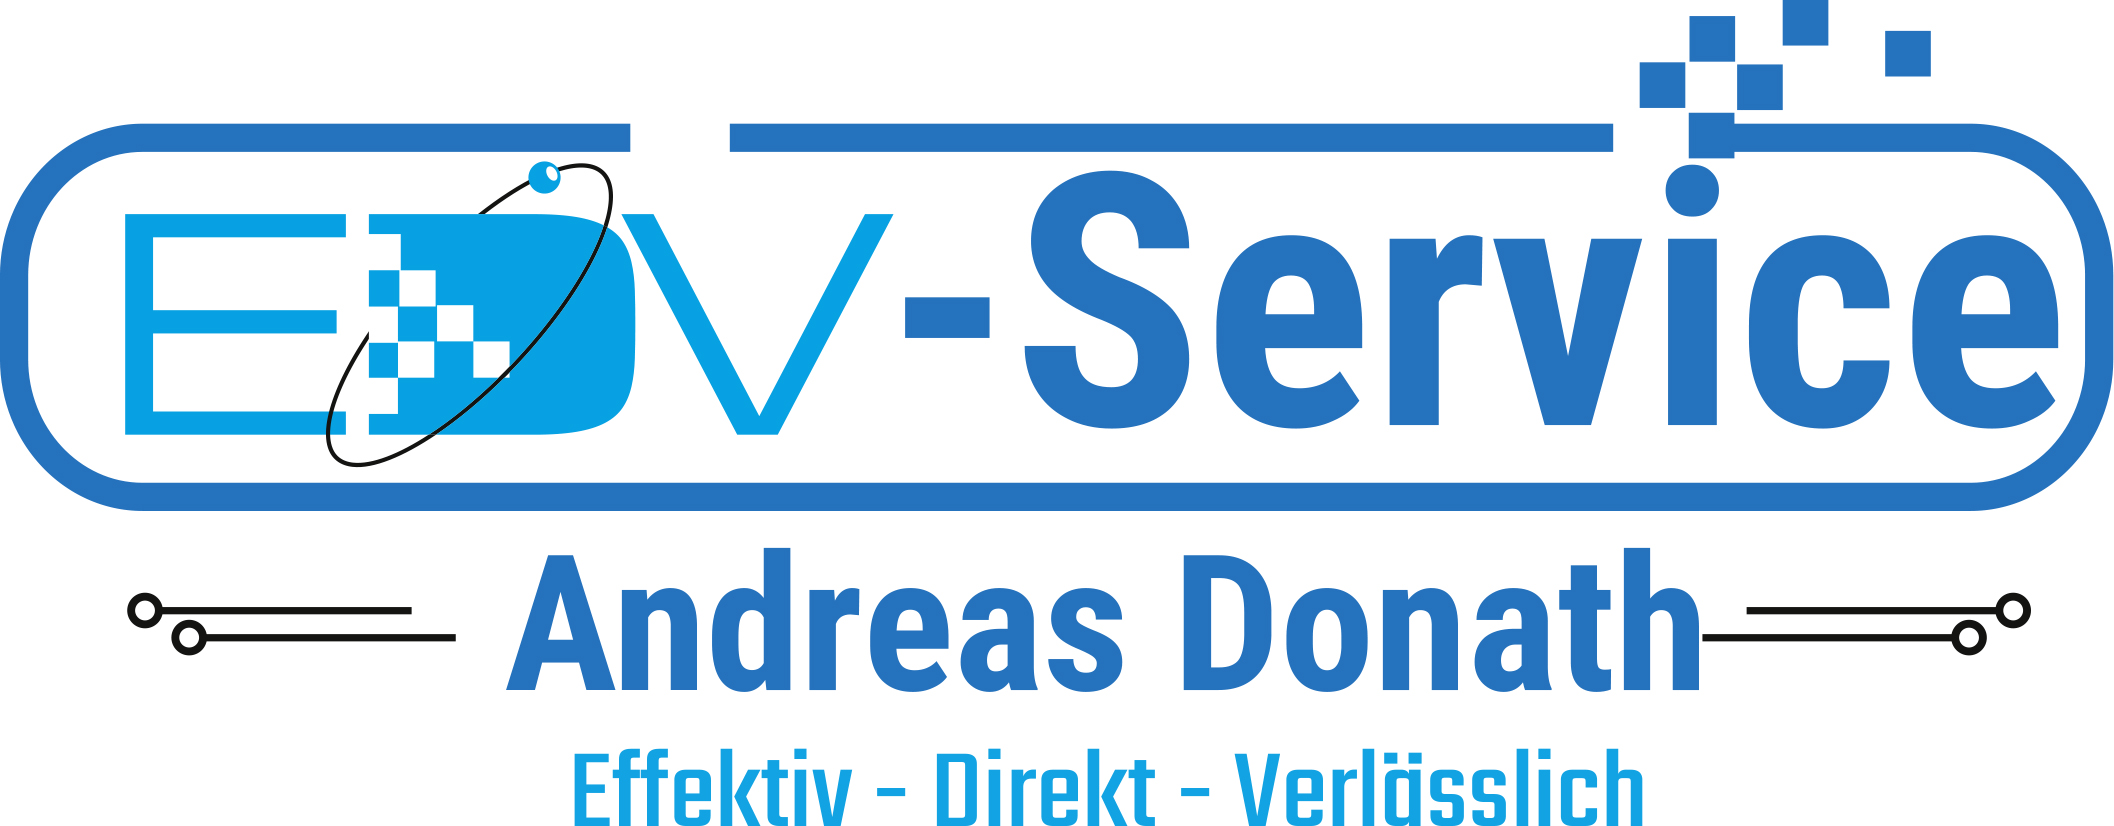 EDV-Service Andreas Donath